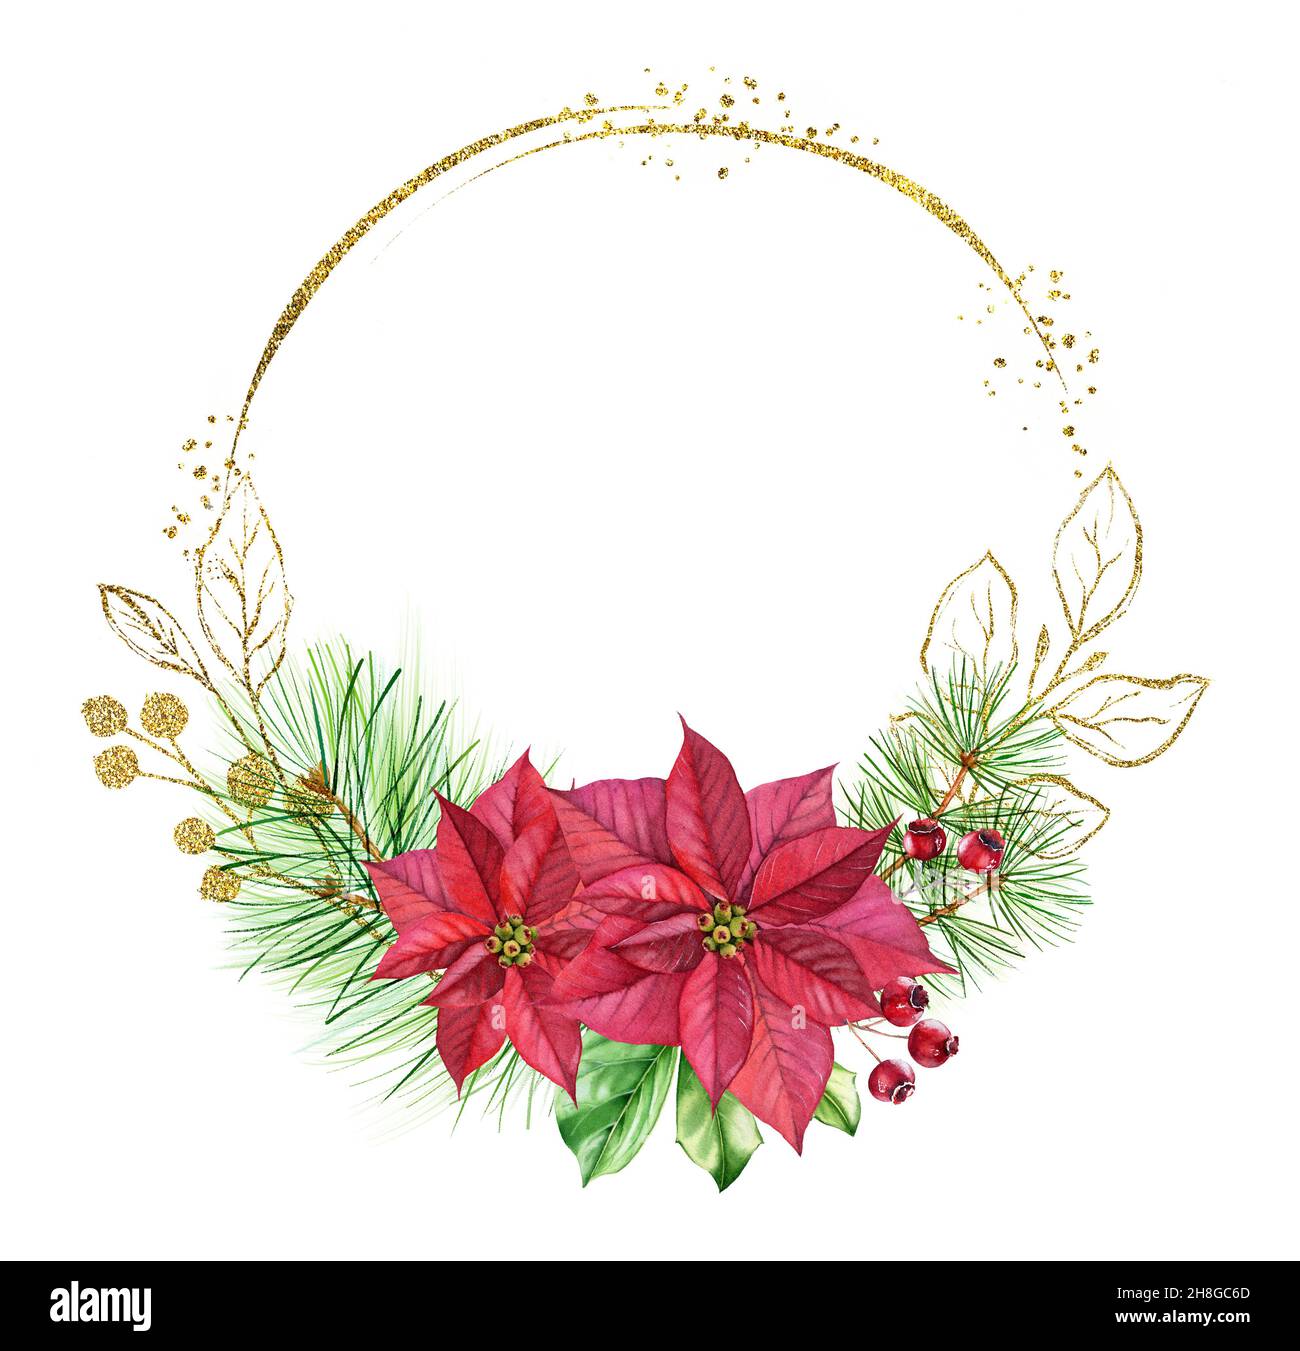 Cornice natalizia ad acquerello con glitter dorata. Forma rotonda con posto per testo, fiori rossi, pino. Illustrazione dipinta a mano per le feste. Circolare Foto Stock